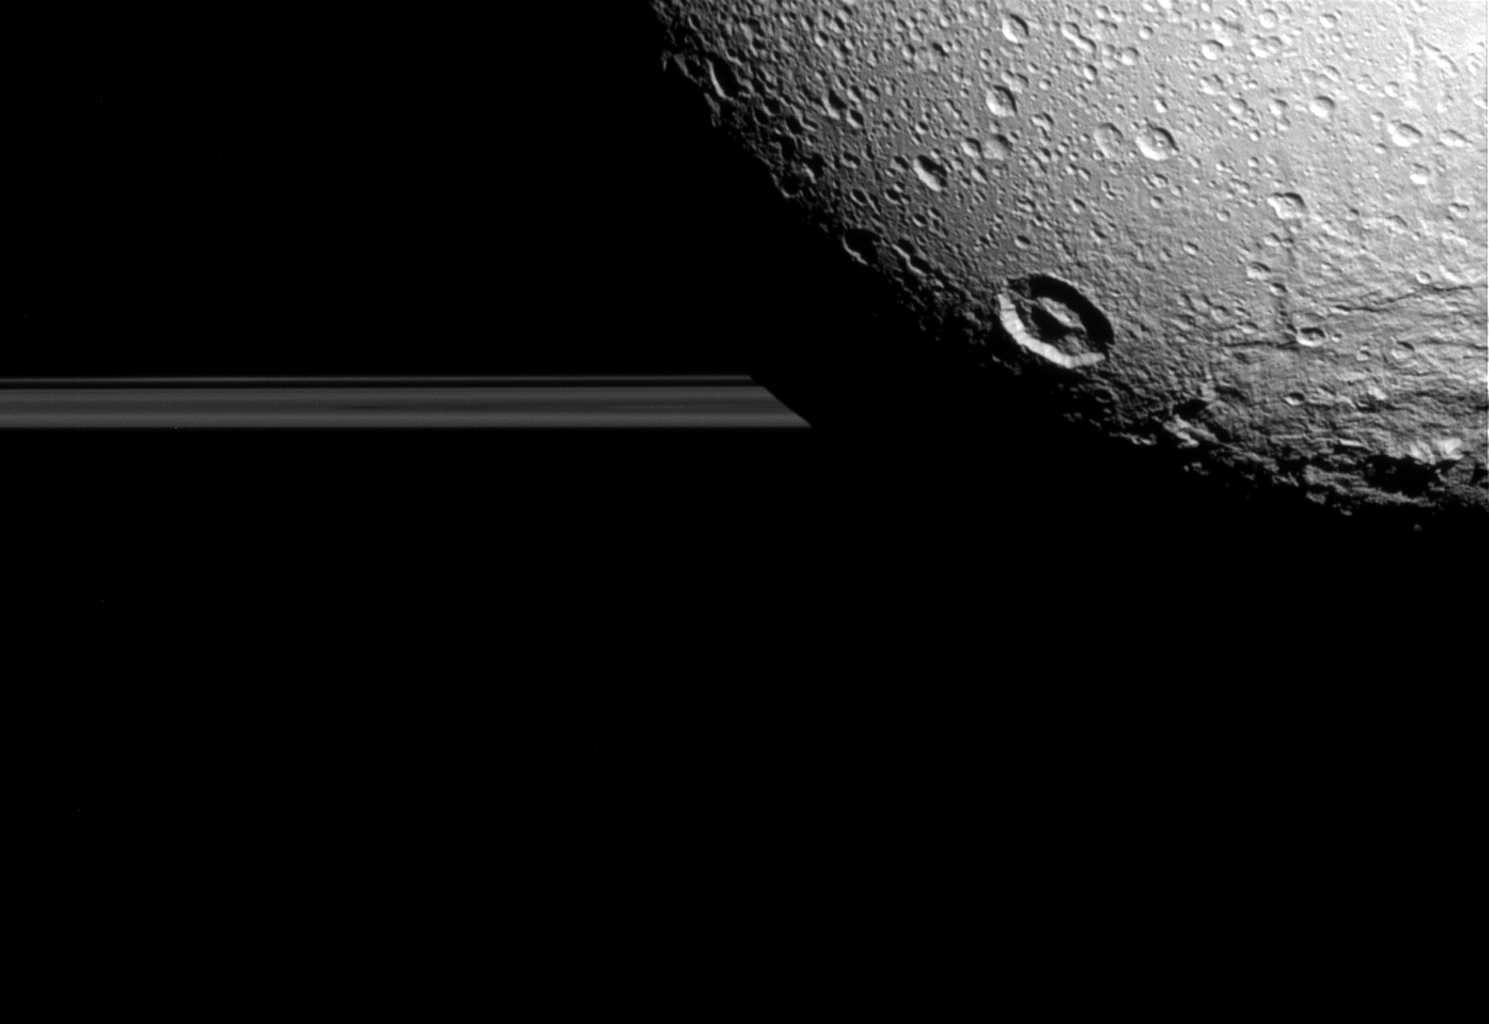 Utoljára repült közel a Cassini a Szaturnusz Dione holdjához